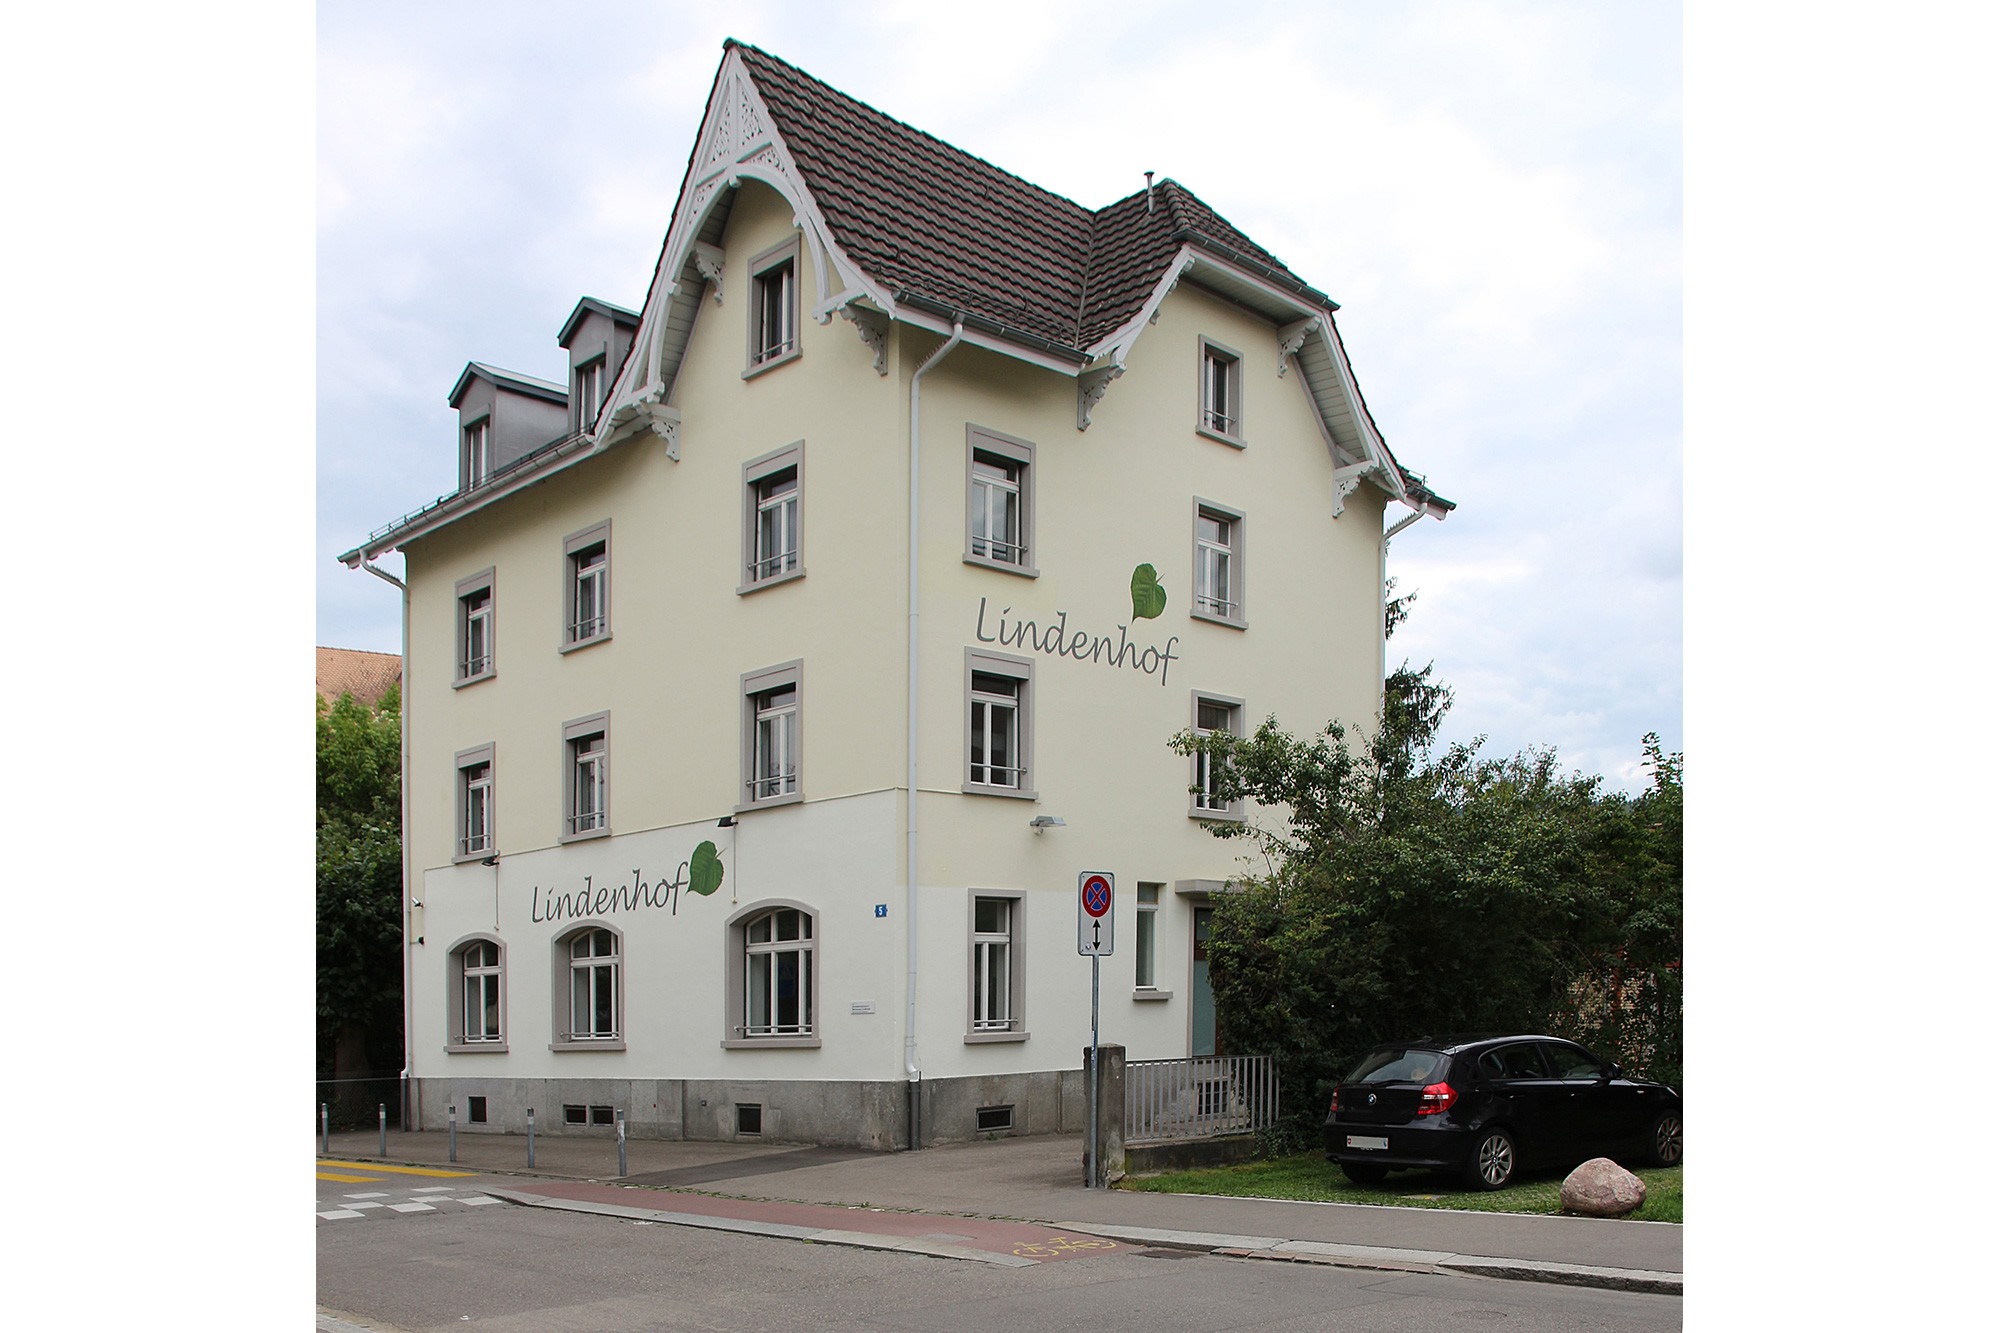 Das ehemalige Restaurant Lindenhof wurde als Betreuung für die Schuleinheit Dachslernstrasse umgebaut. Die hauptsächlichen Anpassungen des Umbaus, befinden sich im Inneren des 1895 erstellten Gebäudes. (@ Lada Blazevic, Zürich)